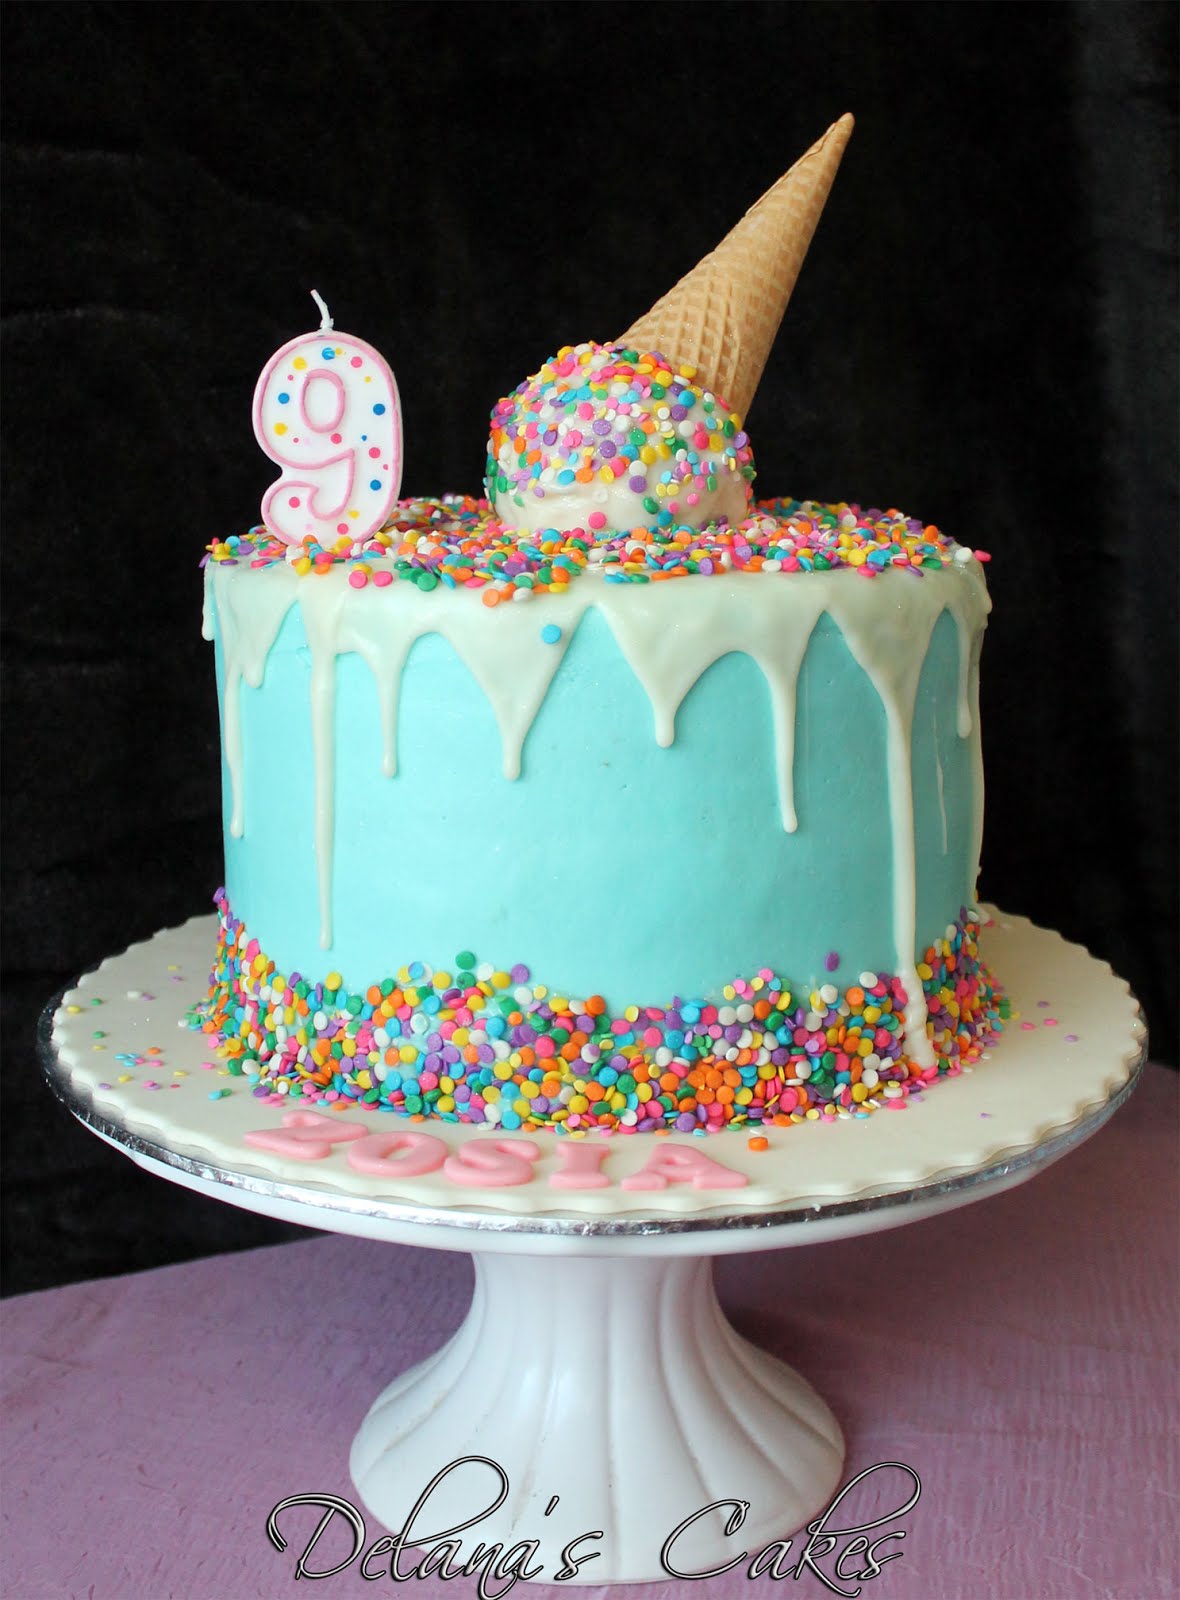 Delana's Cakes: Melting Ice cream cake!